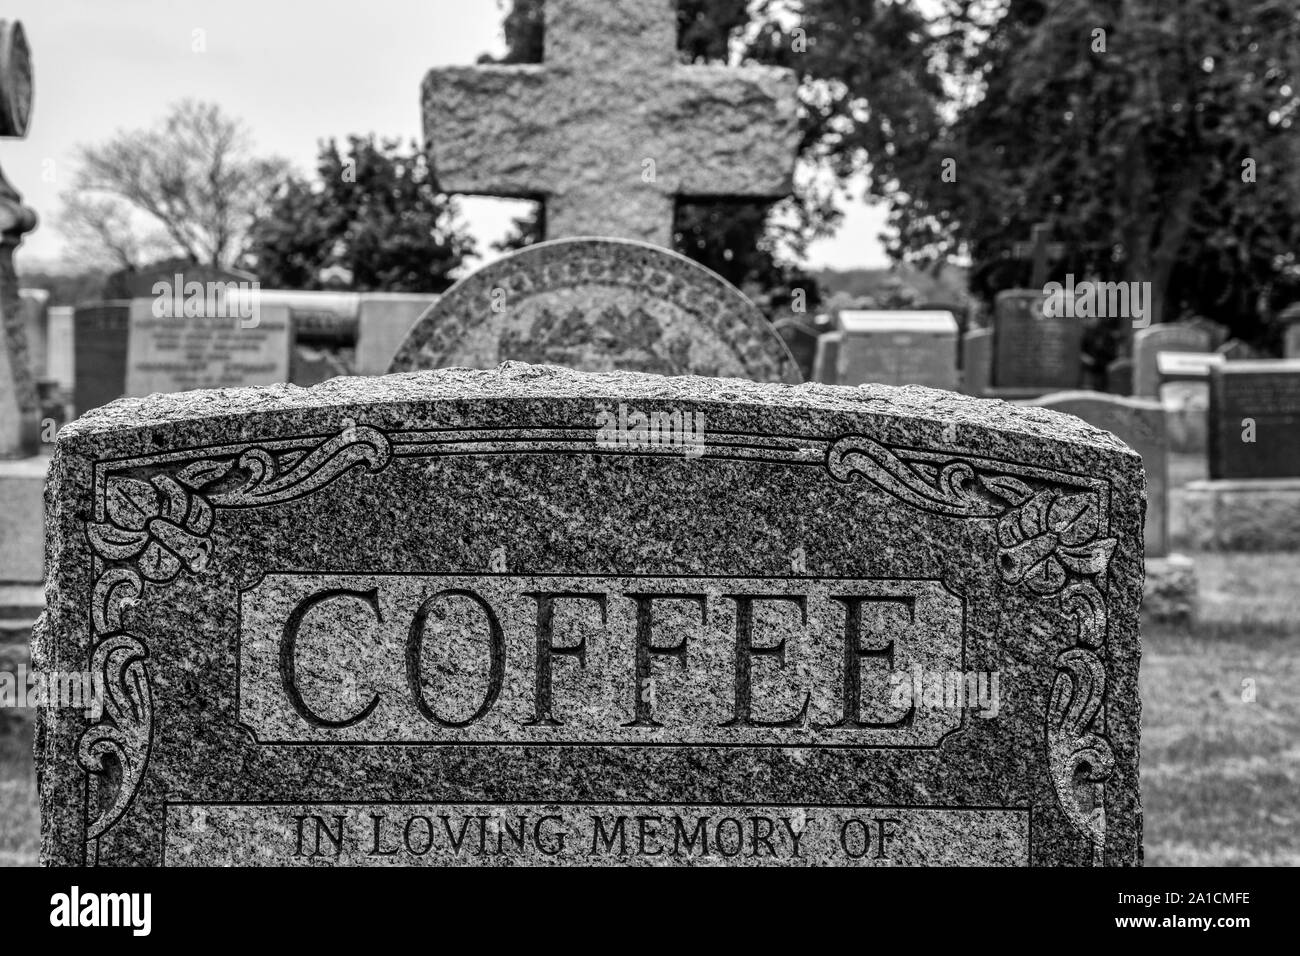 Image Monochrome de plusieurs pierres tombales, le point focal du café lecture, suggérant l'idée de la boisson et de la culture du café. Banque D'Images